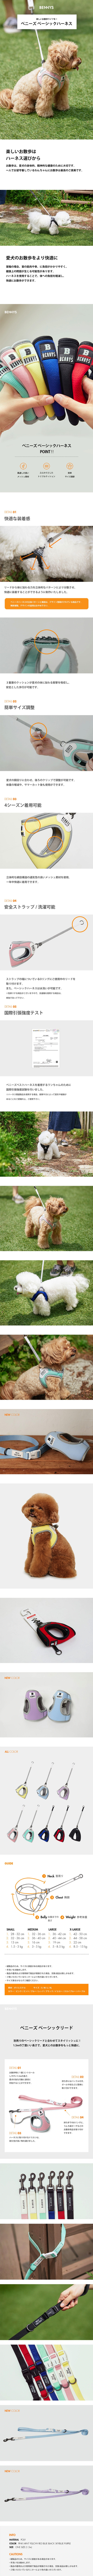 ベストフレンズ 犬用 ハーネス 小型犬 胴輪 散歩 首輪 リード お出かけ 旅行 韓国 ブランド 犬服 犬の服 ドッグウェア  